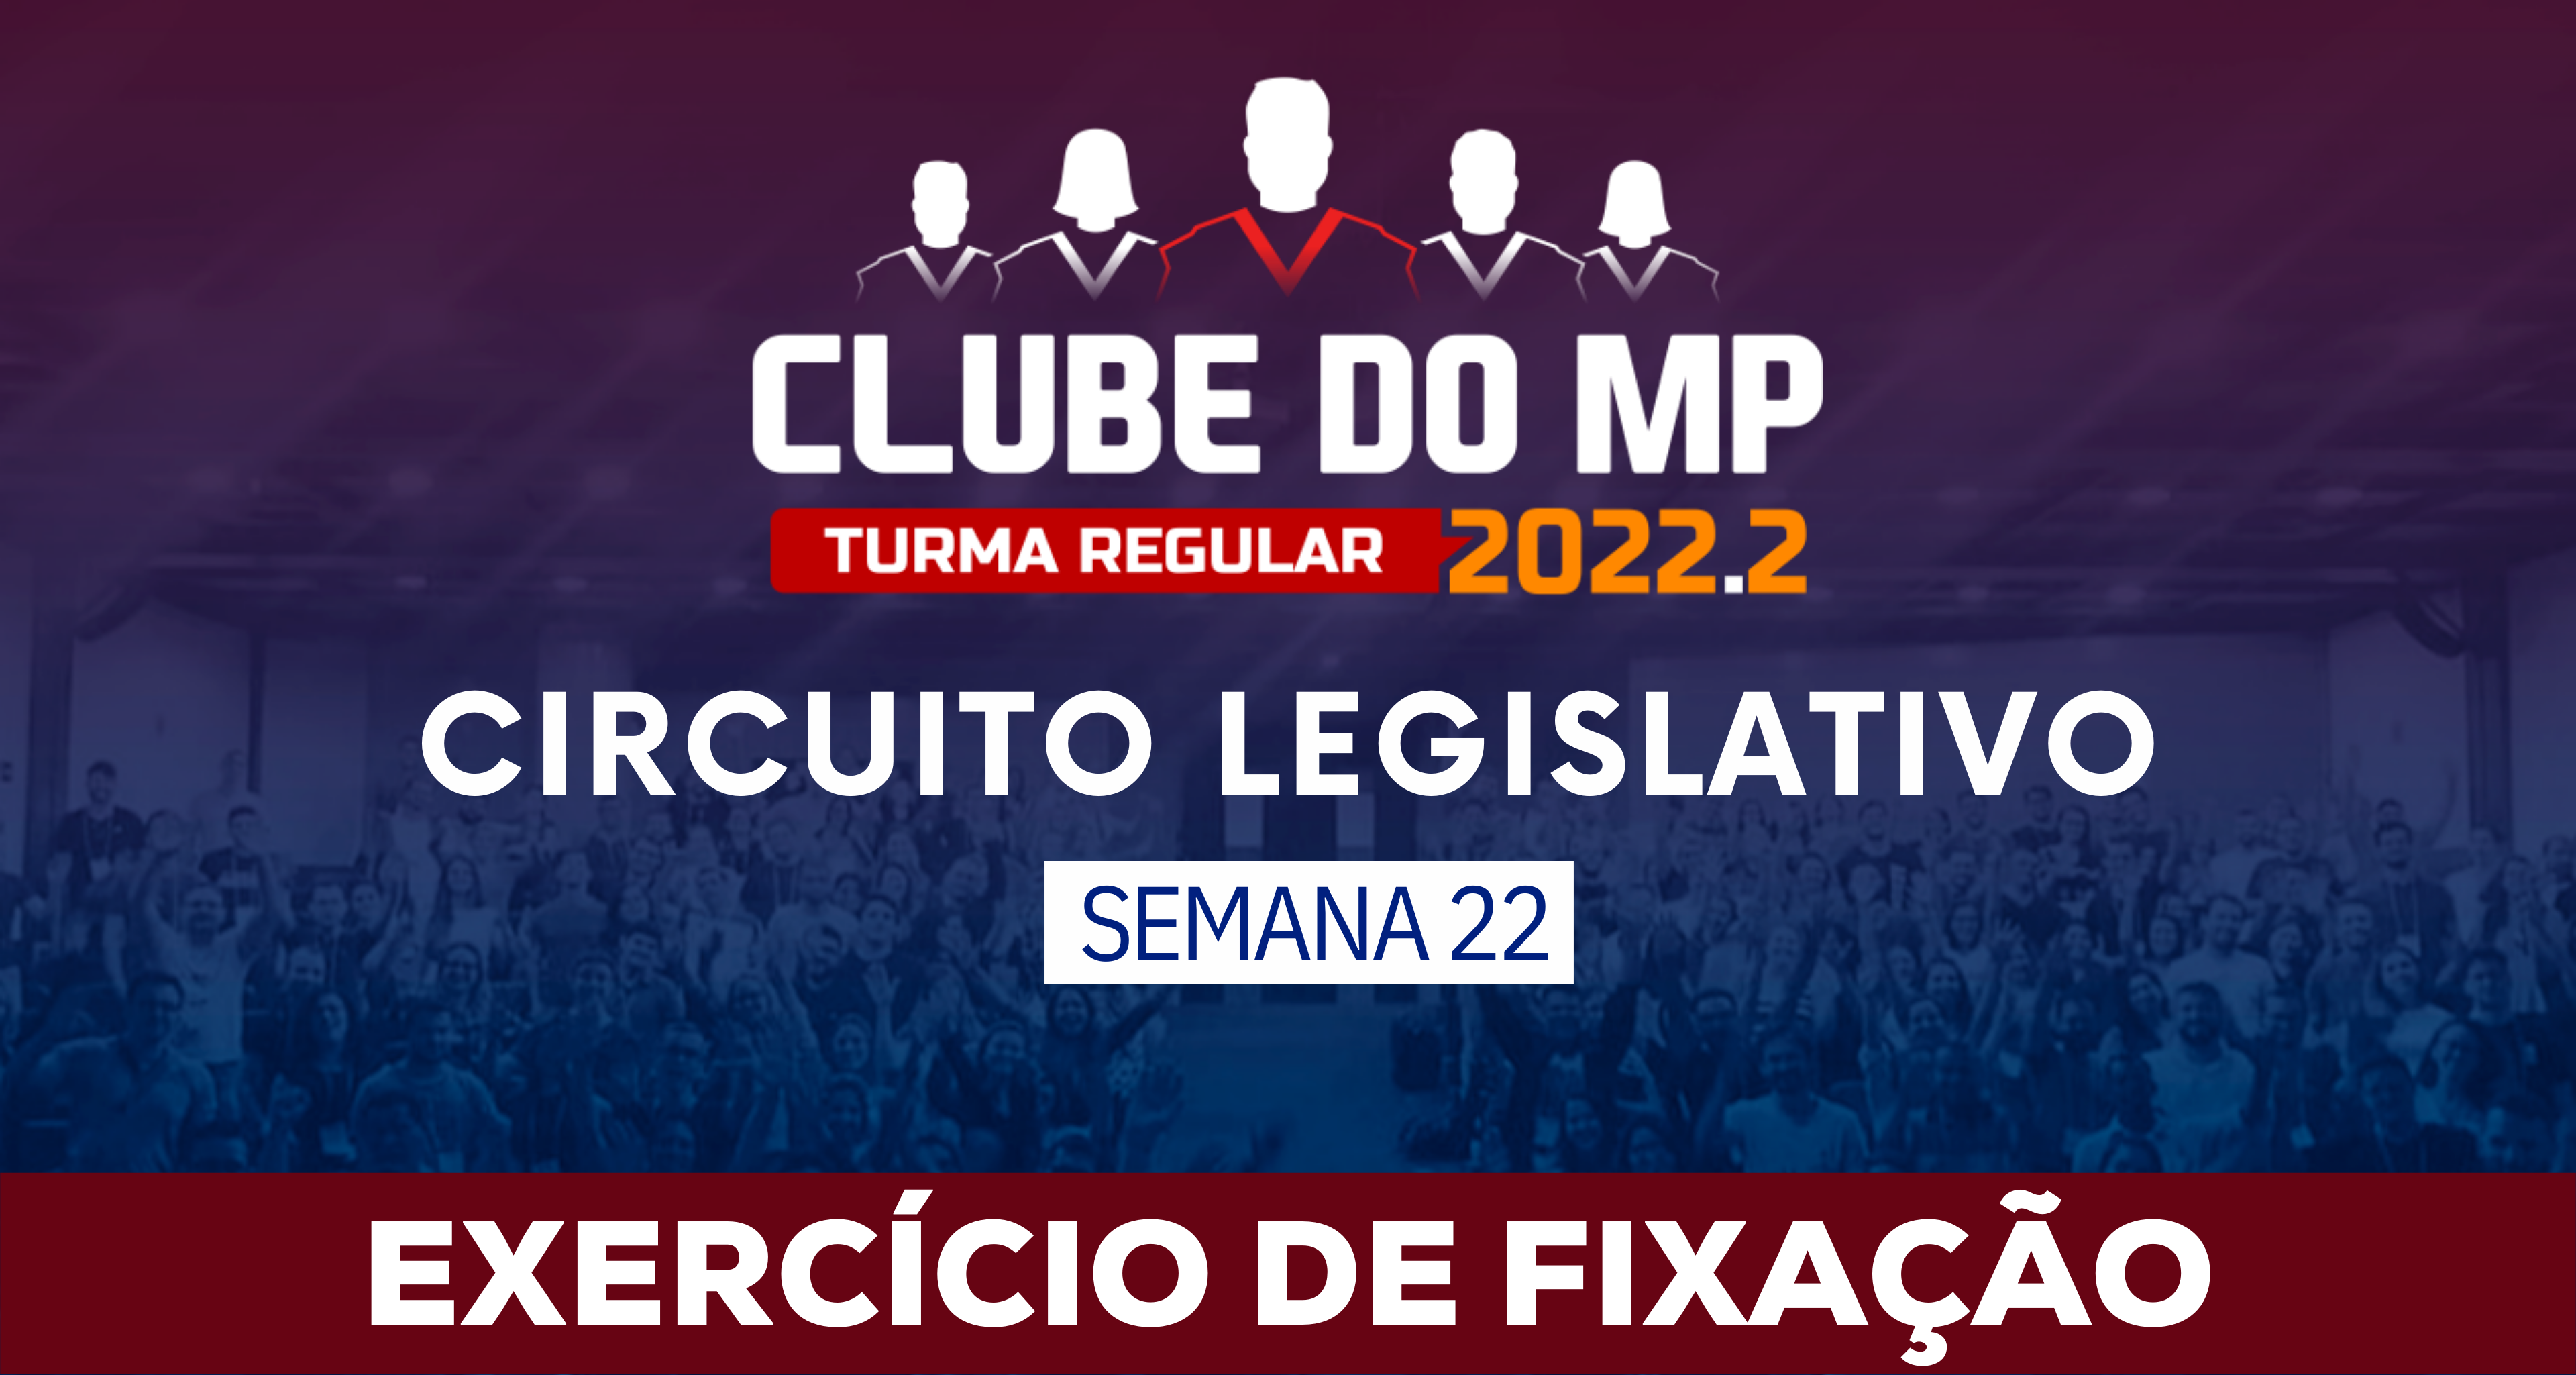 Circuito Legislativo 2022.2 (Clube do MP - Semana 22)